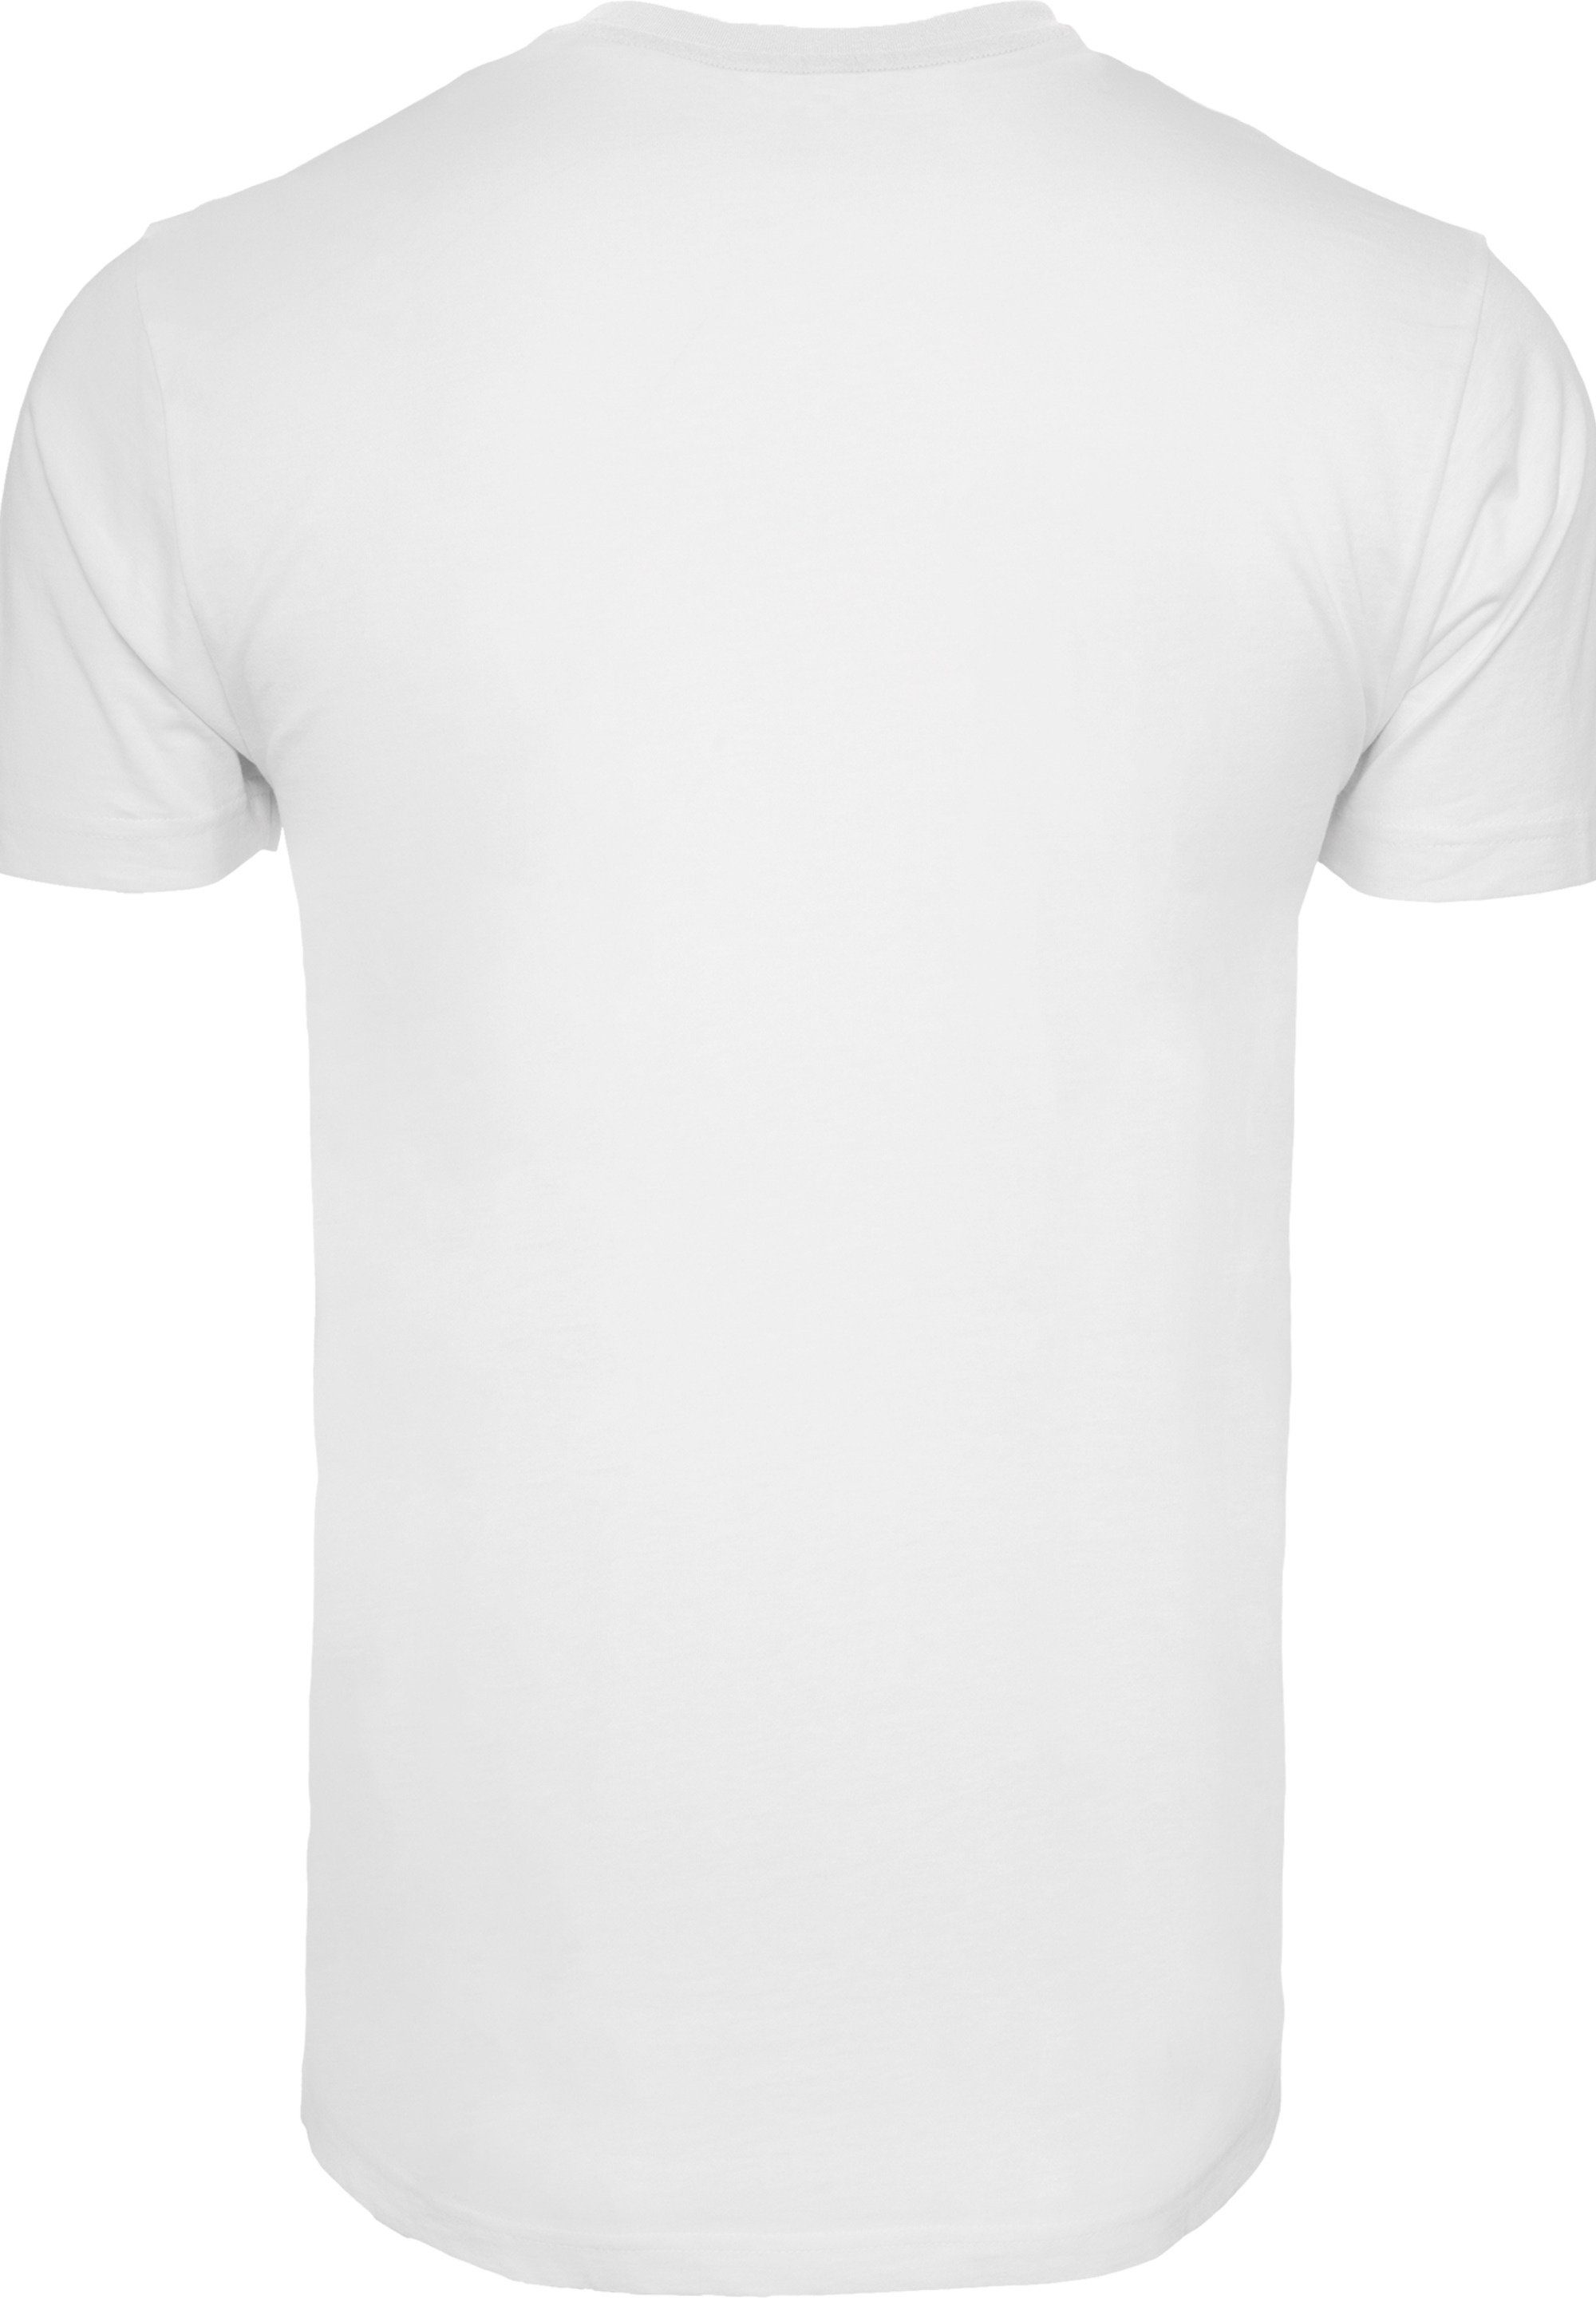 David Herren,Premium Logo F4NT4STIC T-Shirt weiß Merch,Regular-Fit,Basic,Bandshirt Bowie